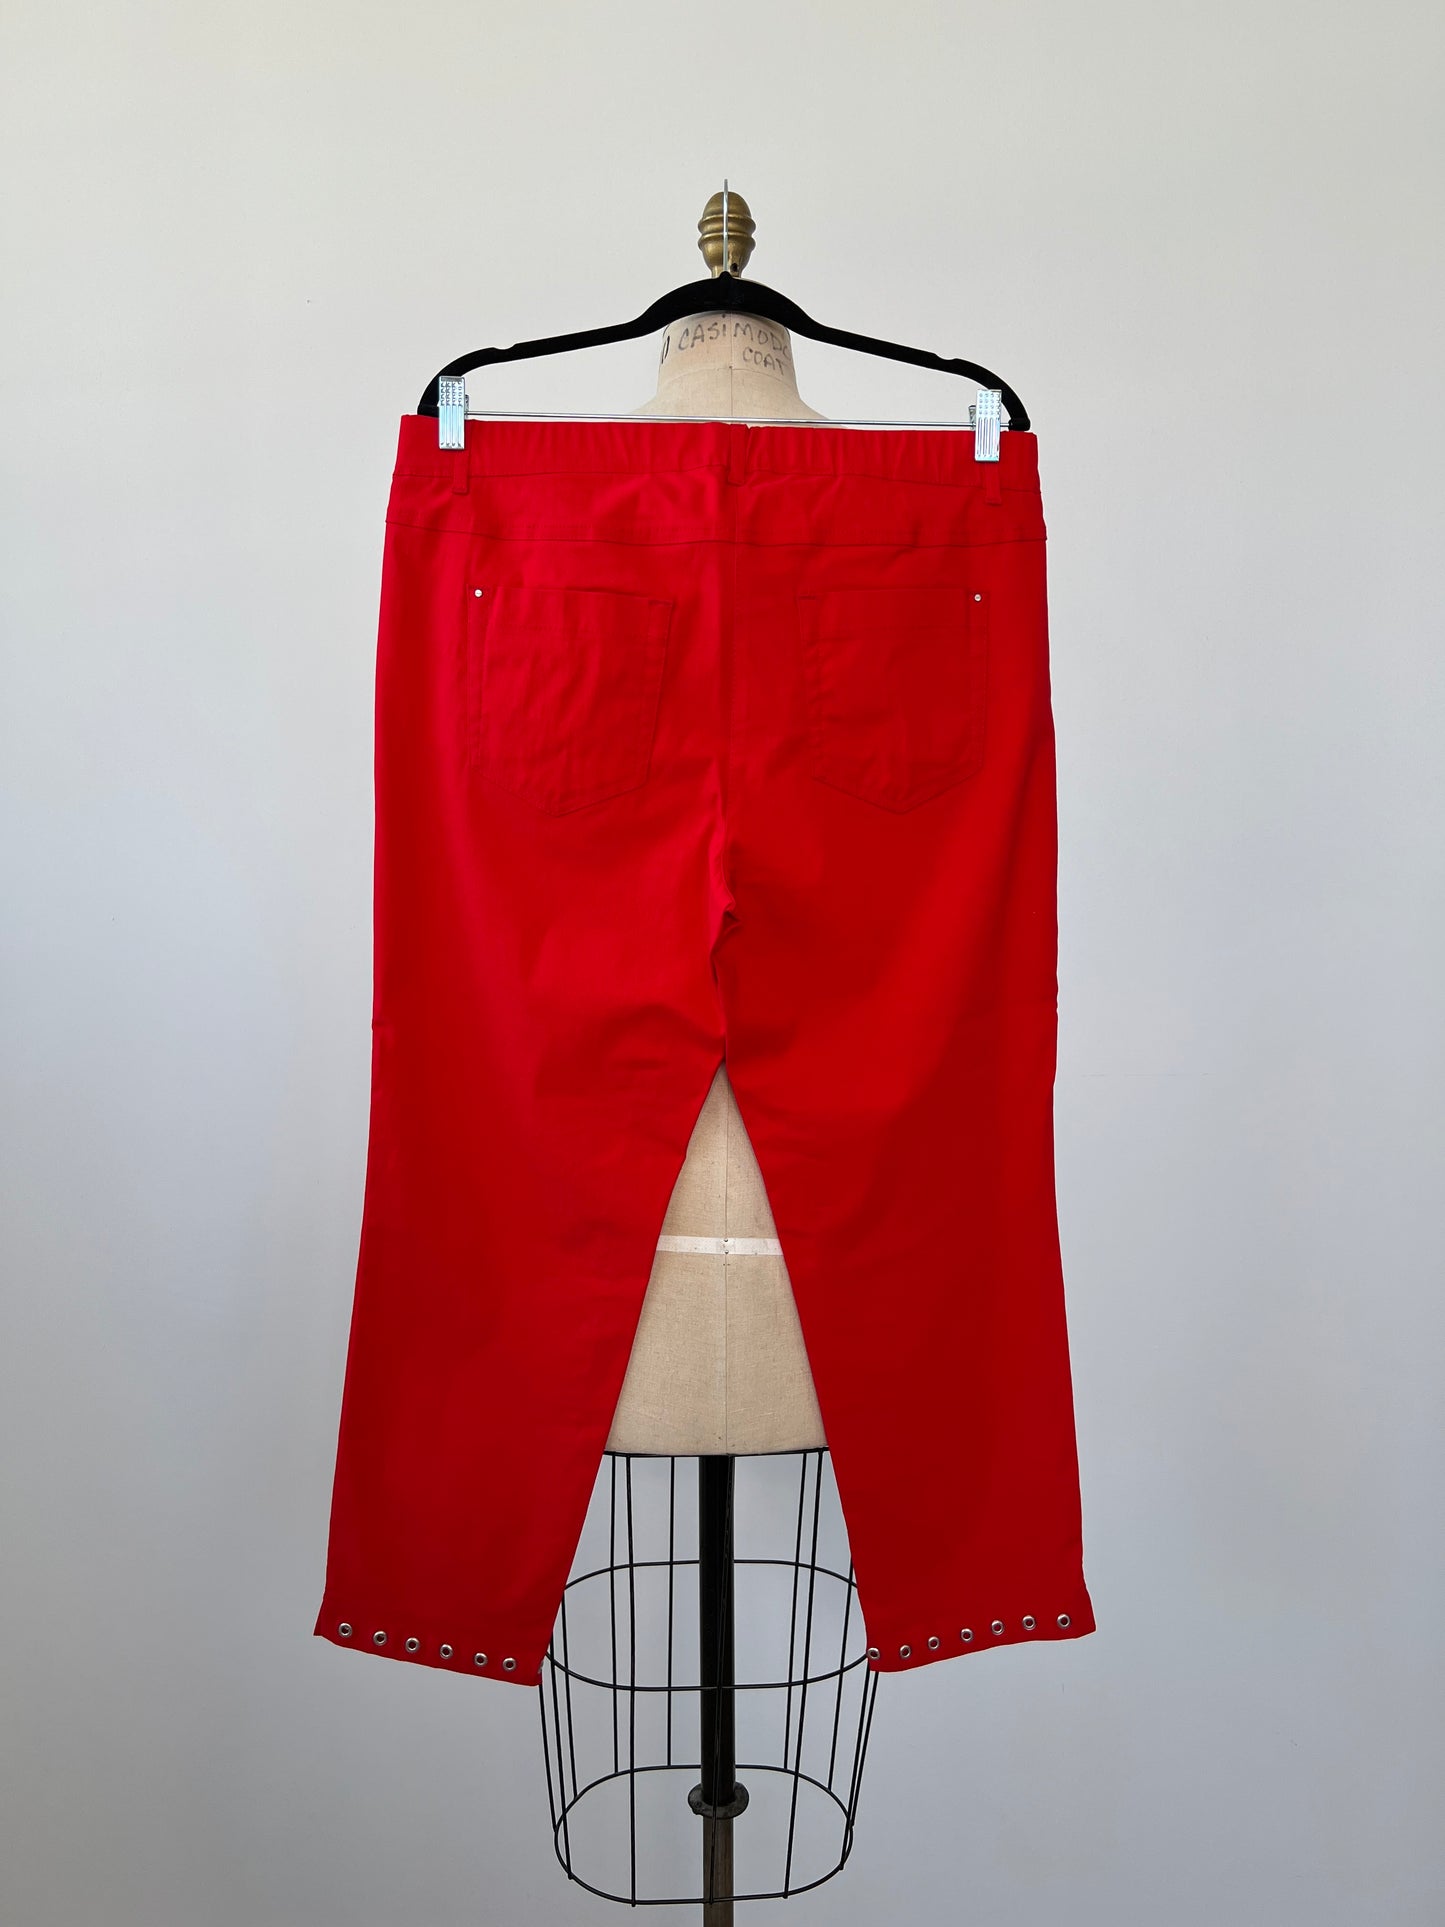 Pantalon extensible rouge à ourlets oeillets (16/18)